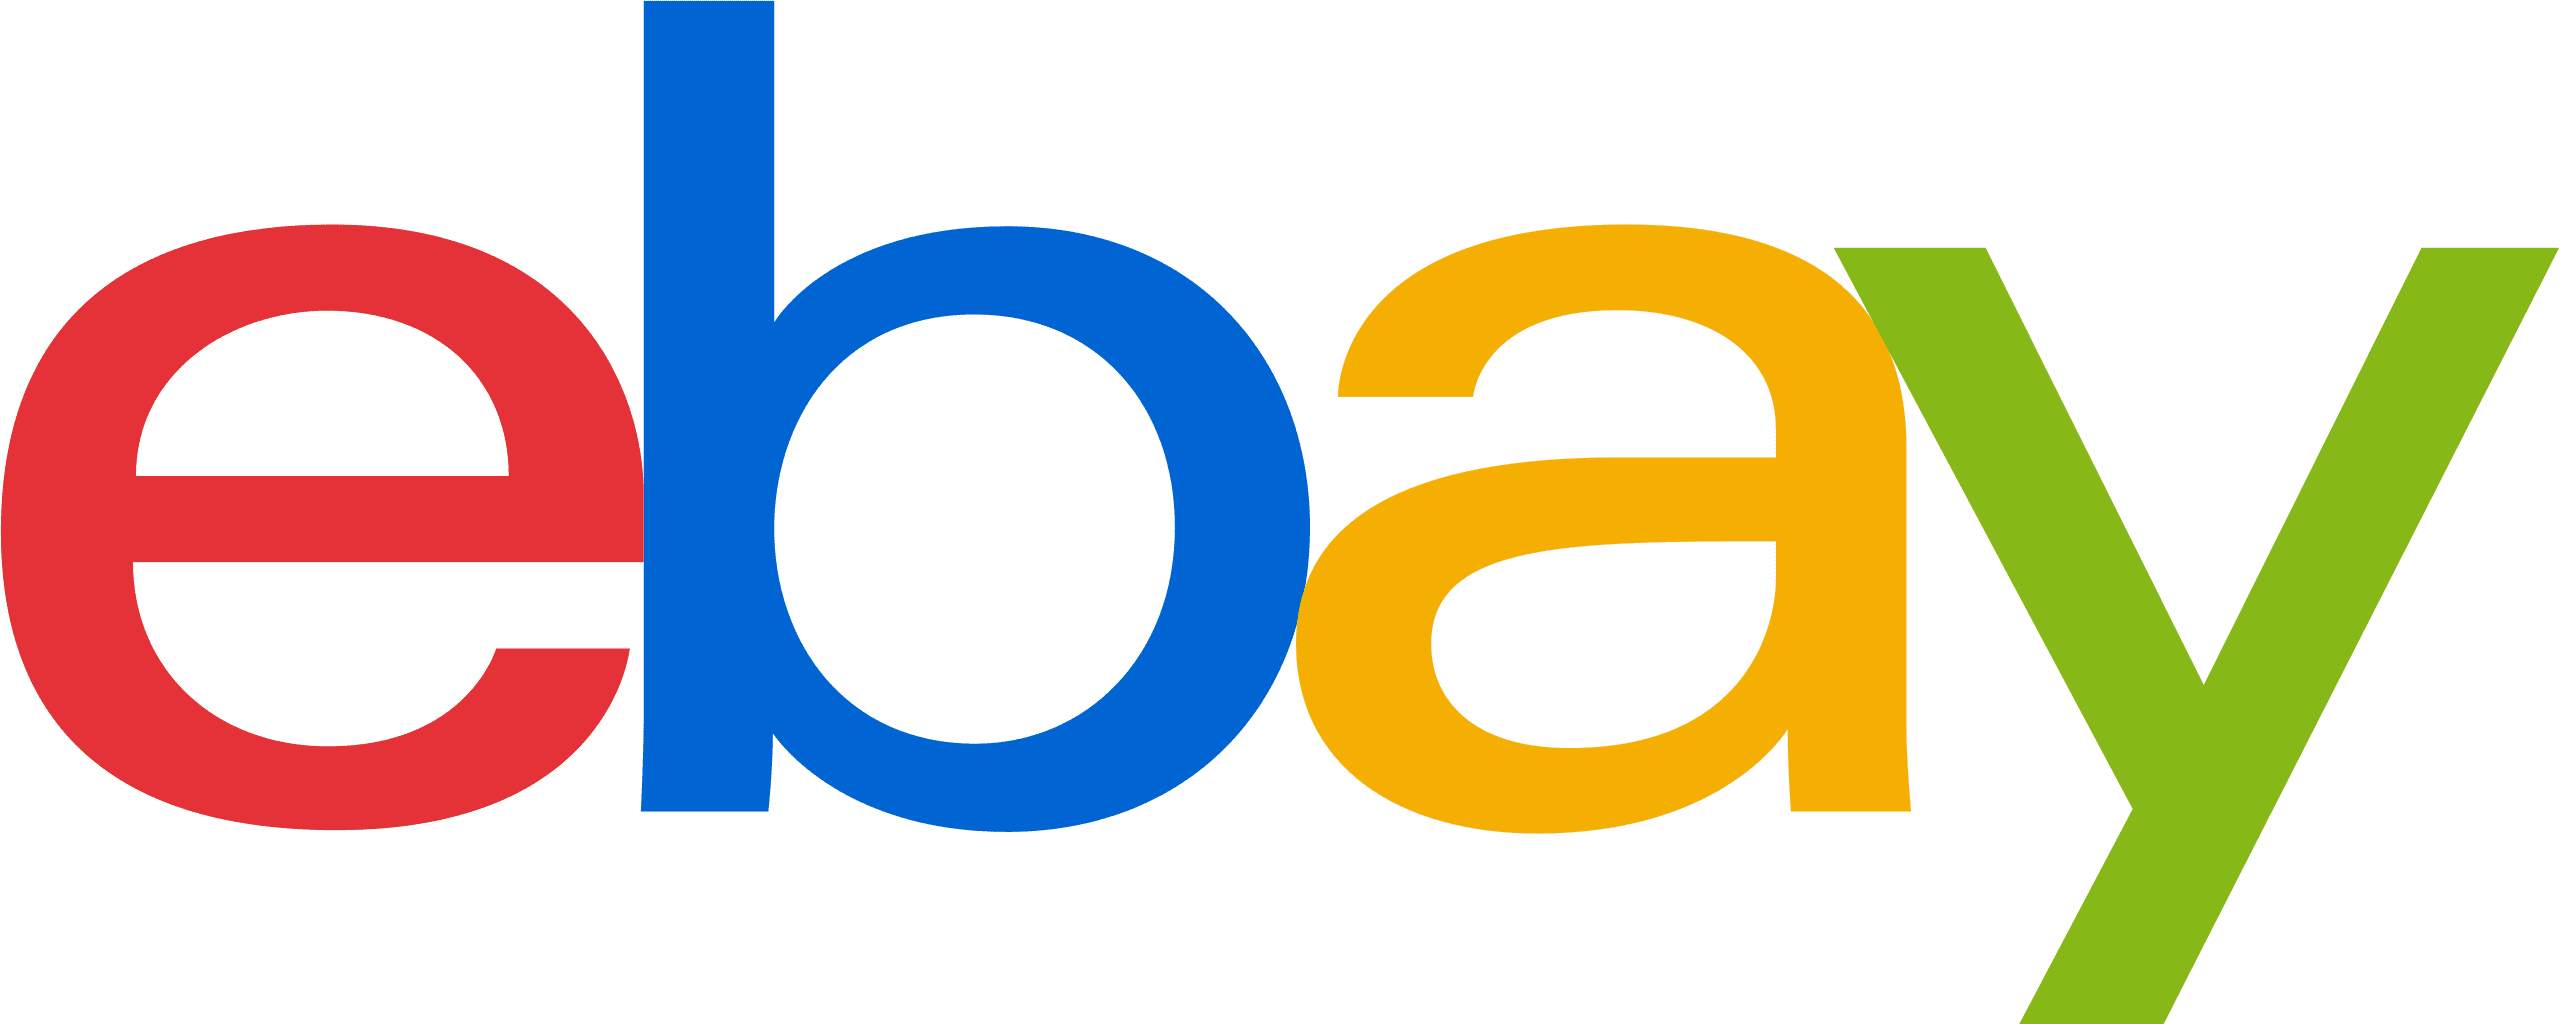 eBay logo webgility